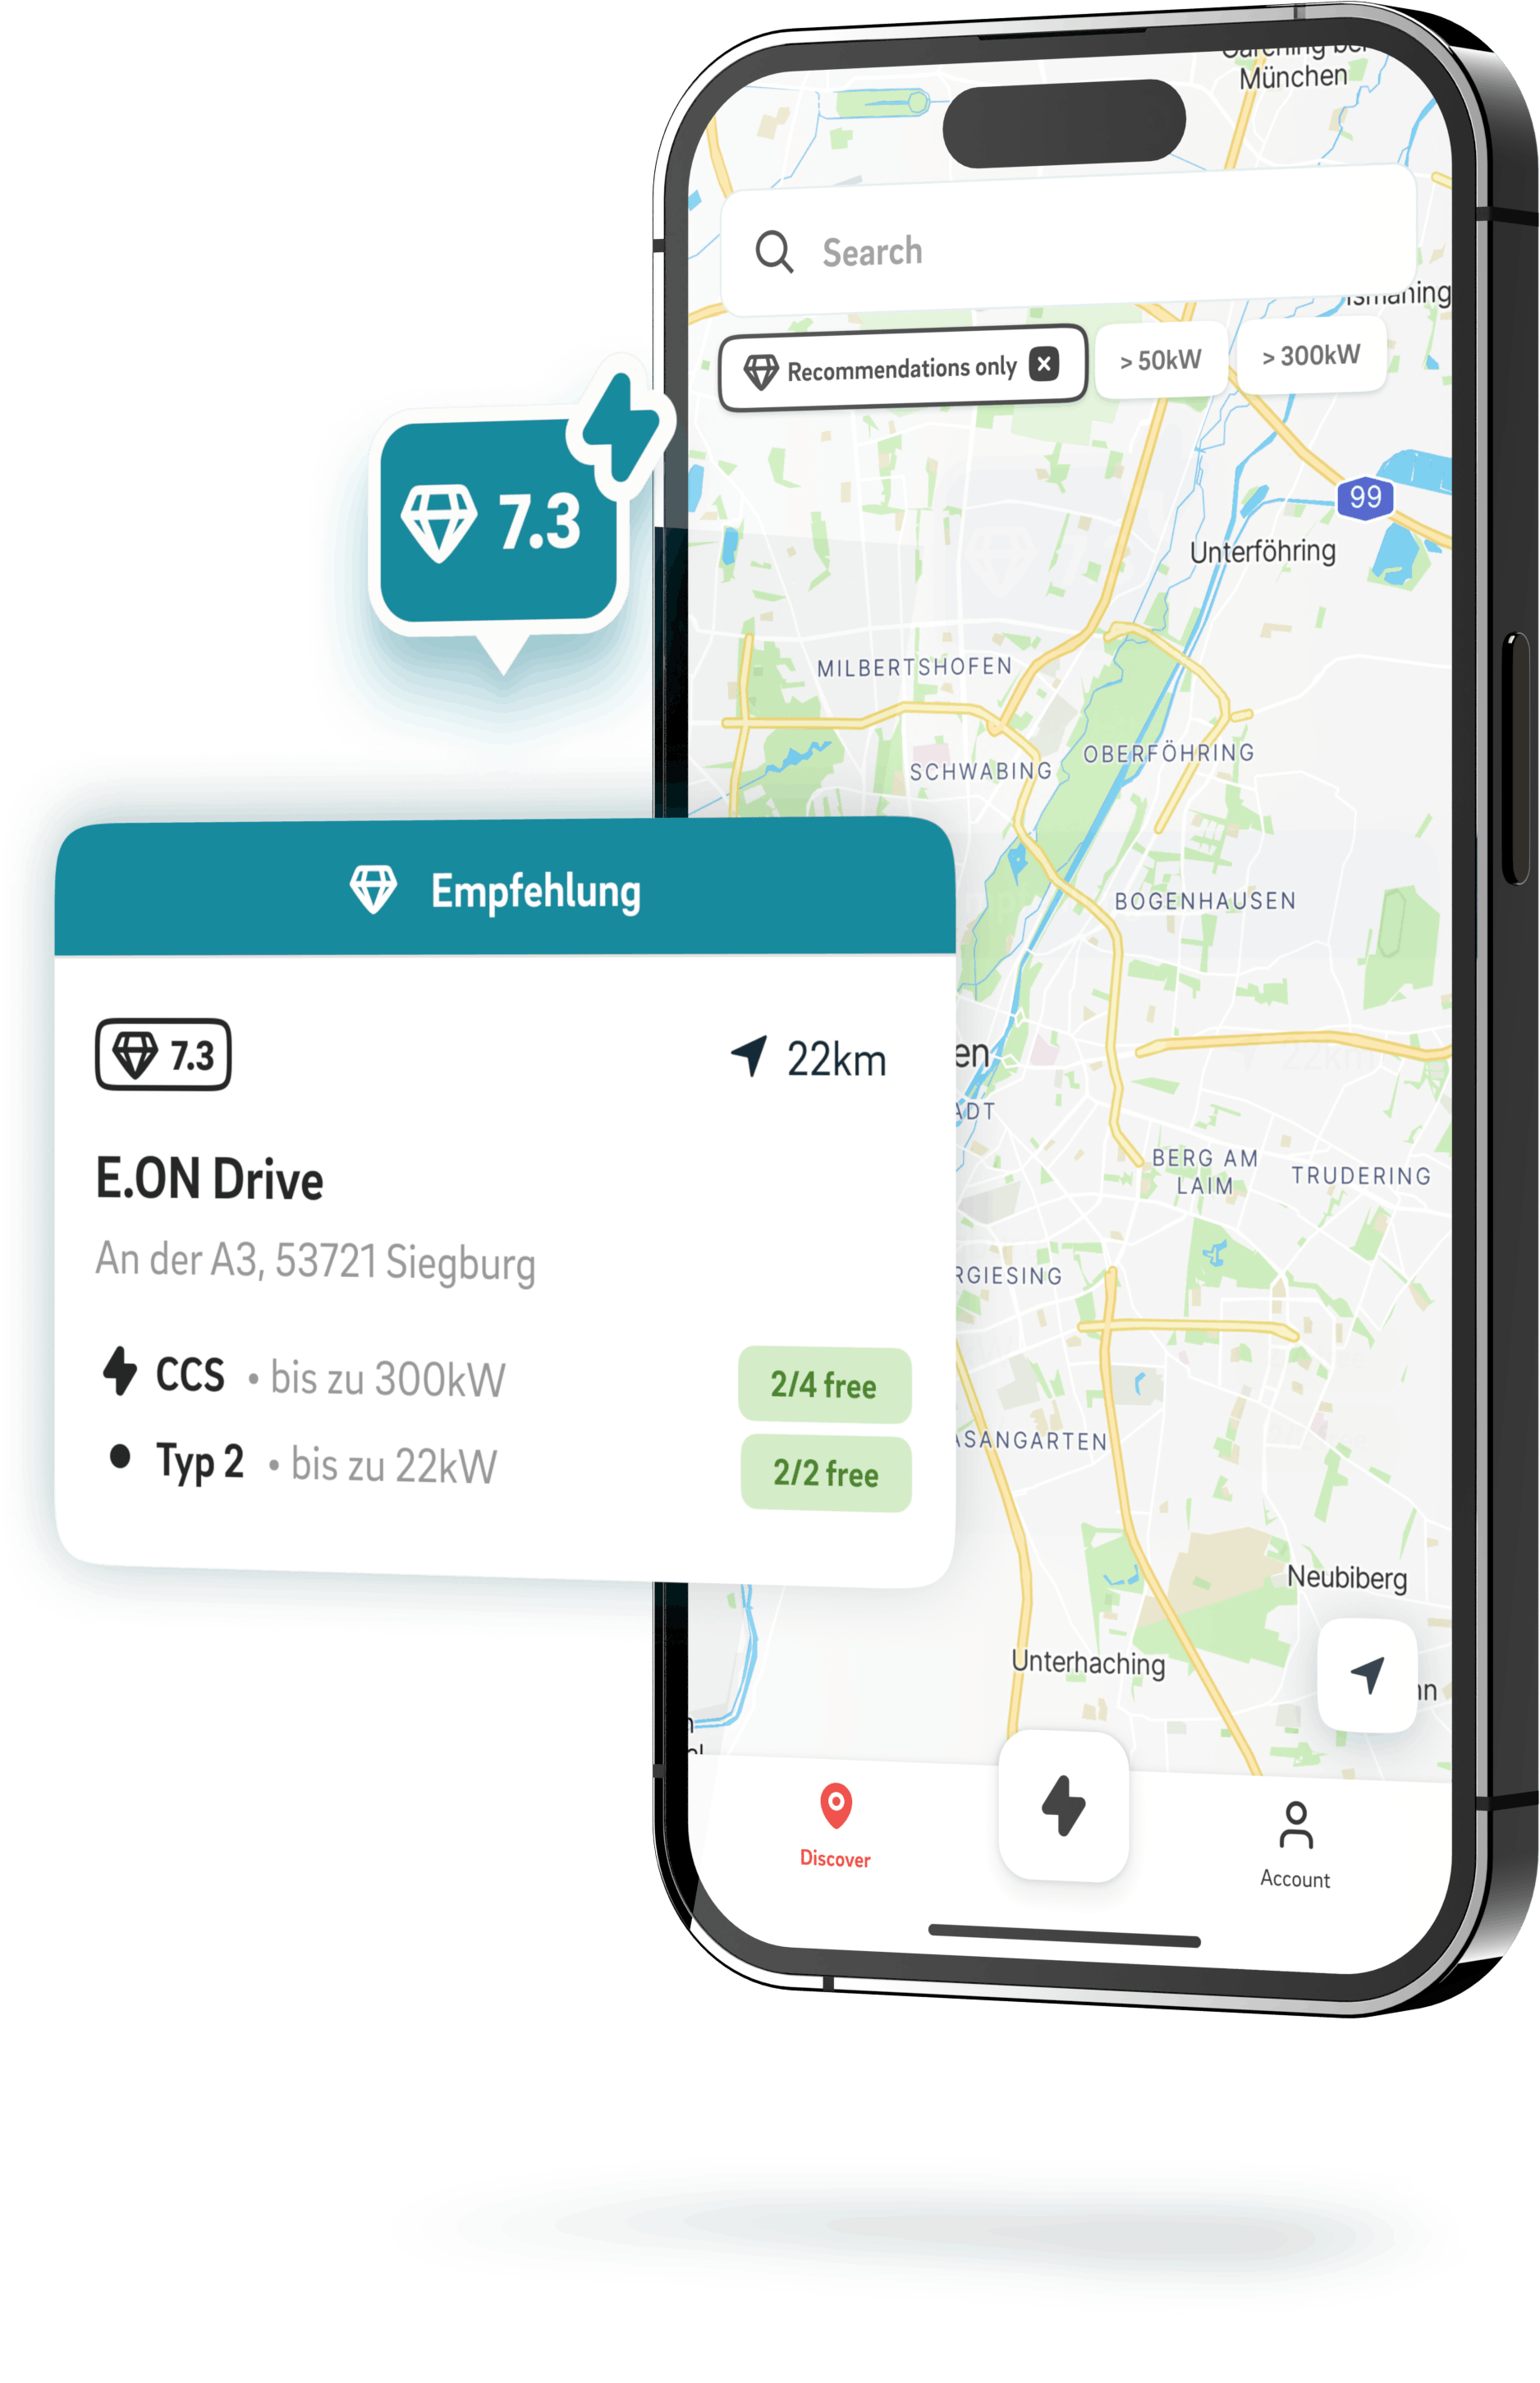 Vorschau der E.ON Drive Comfort App auf einem Smartphone